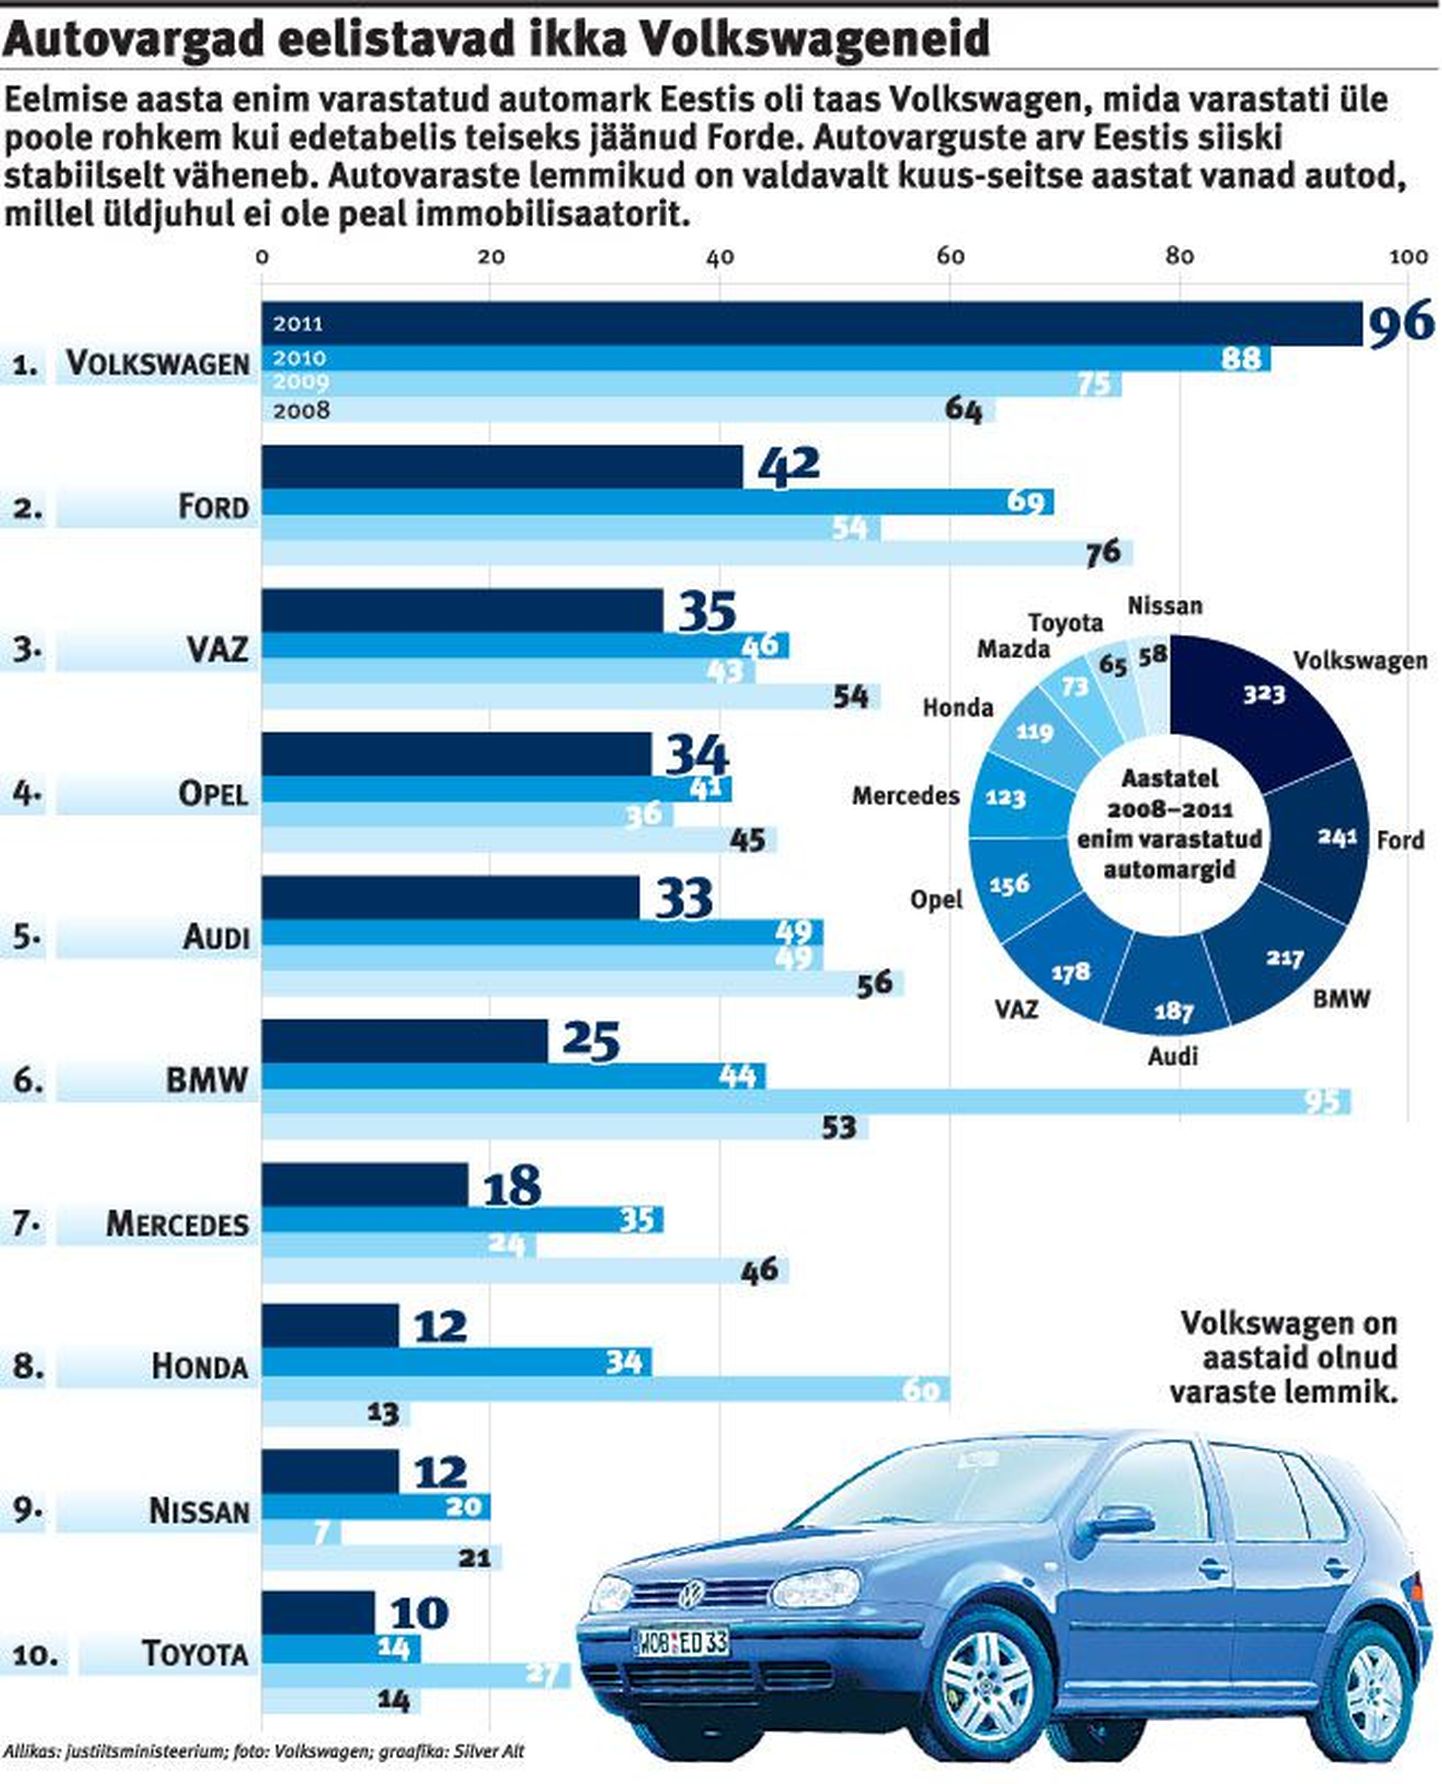 Autovargad eelistavad jätkuvalt Volkswagenit.